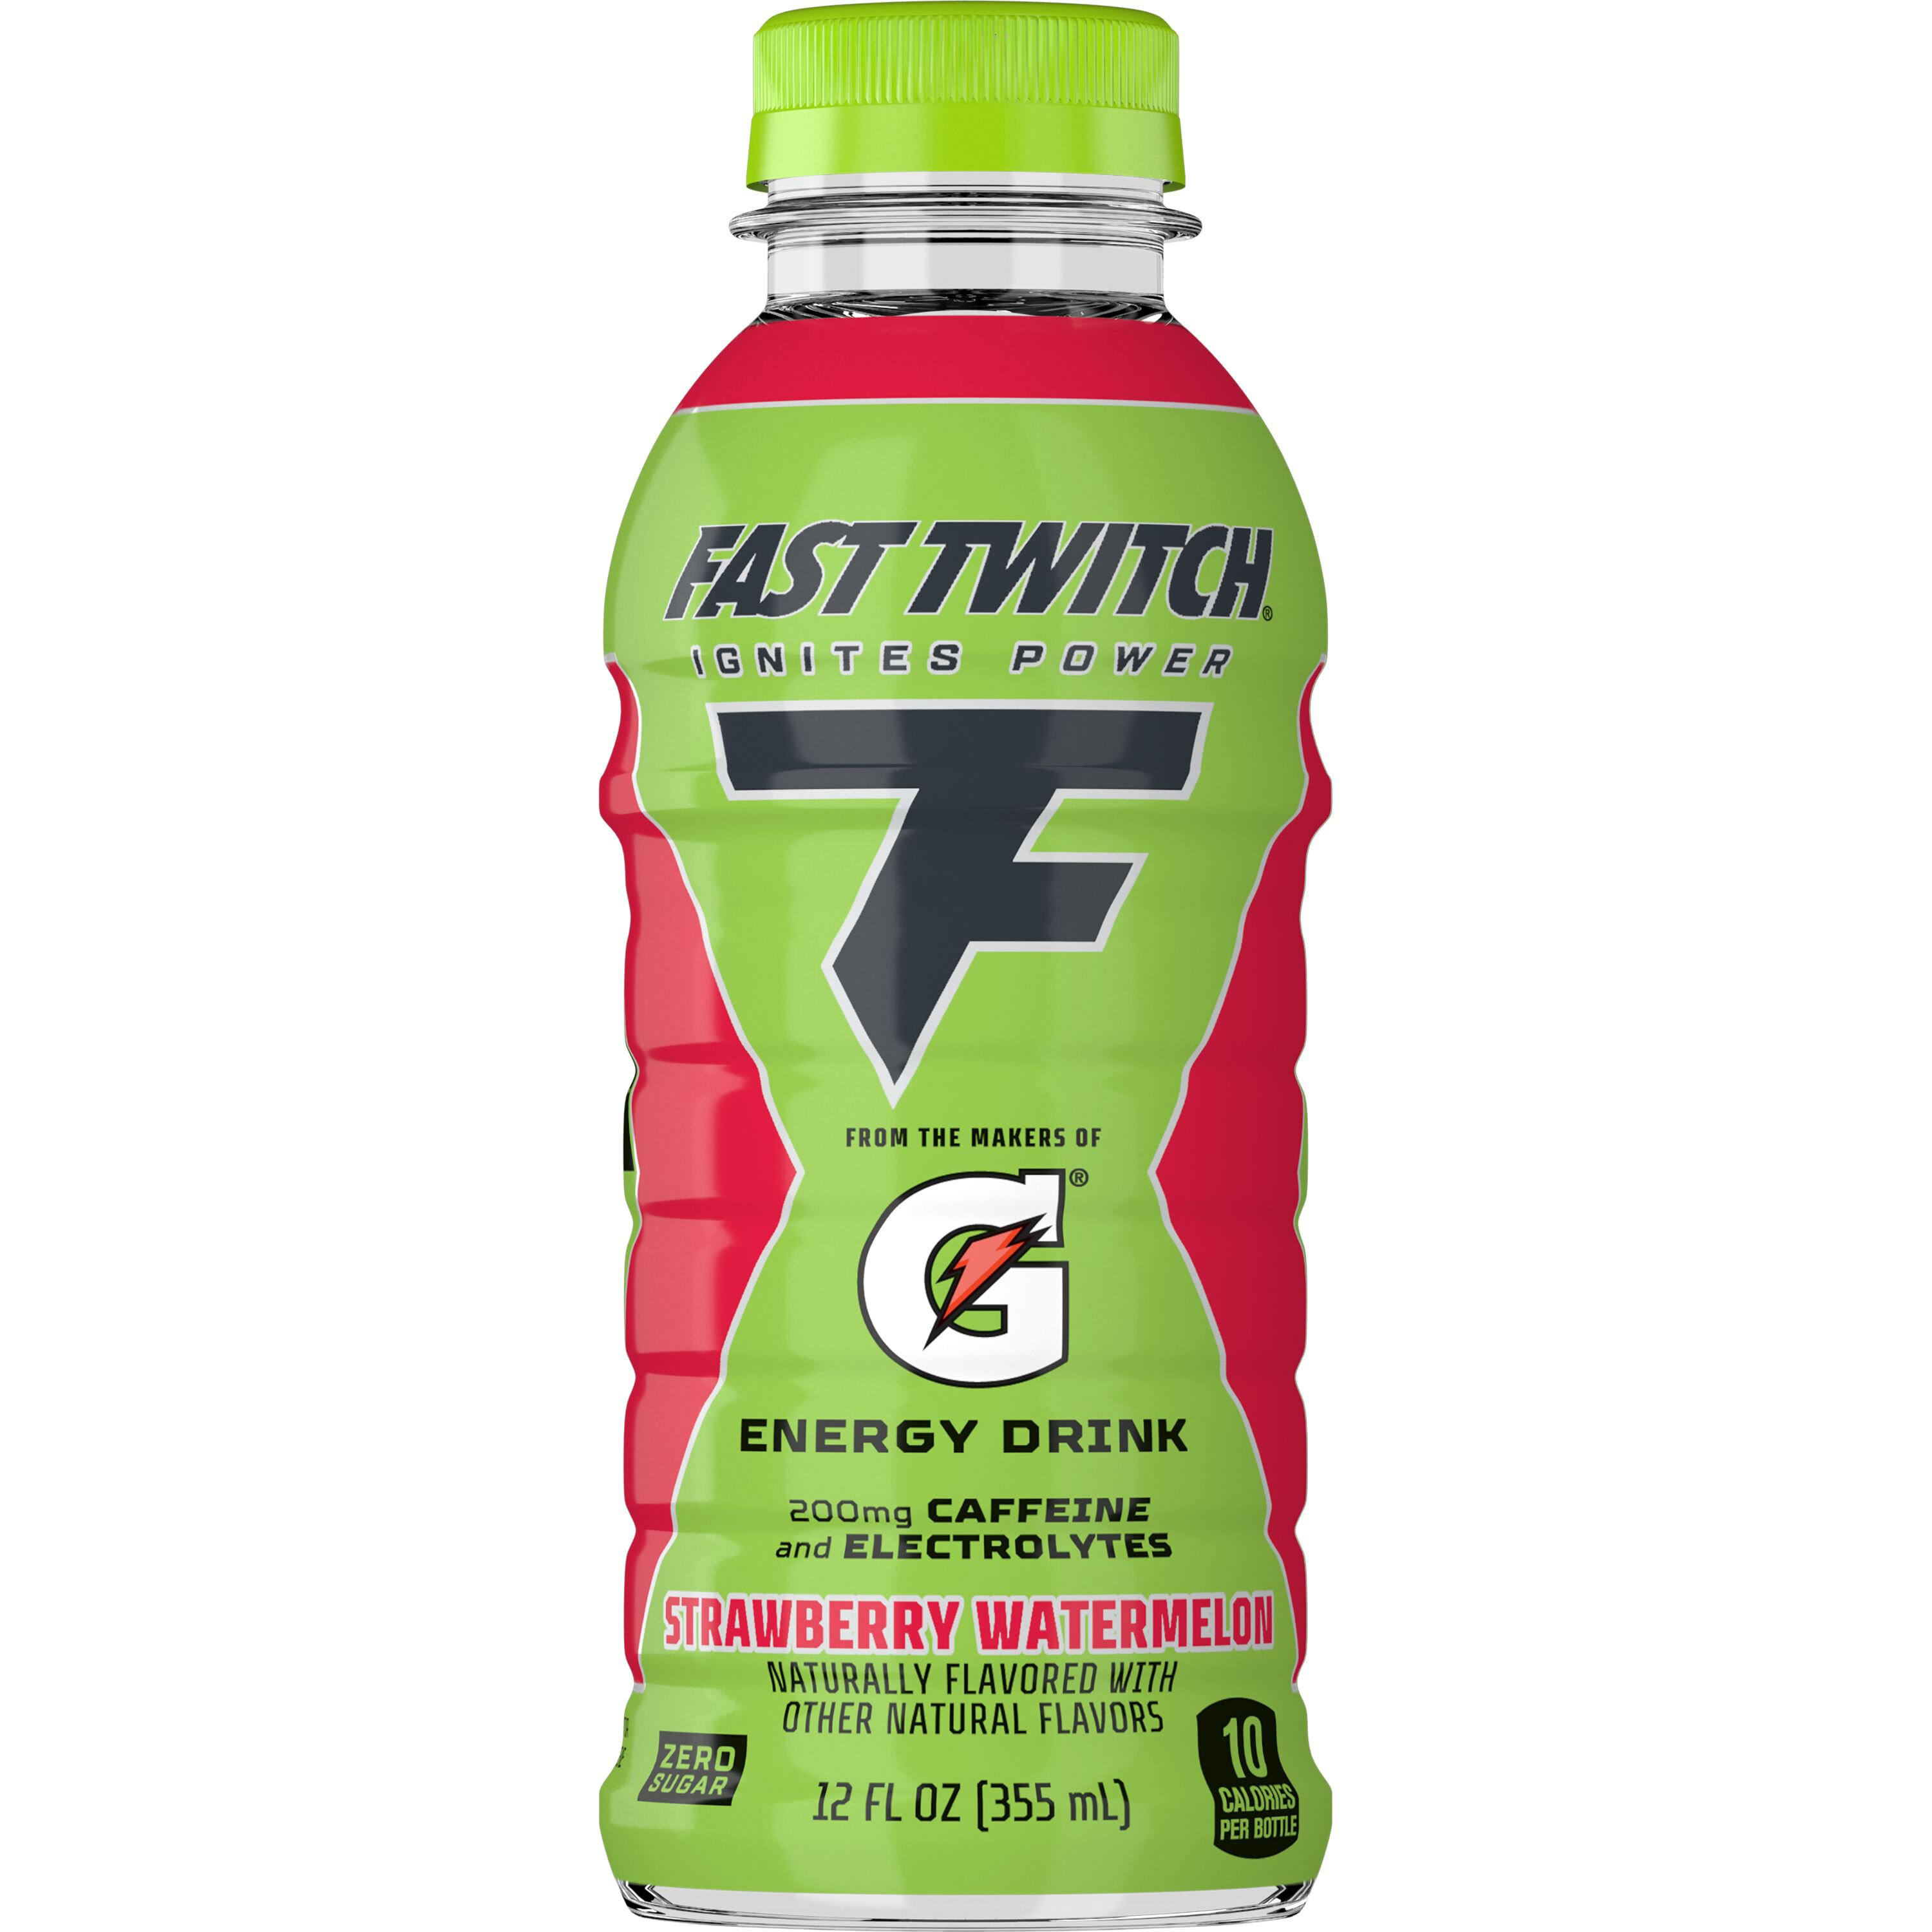 Fast Twitch Energy Drink Strawberry Watermelon, 12 fl oz